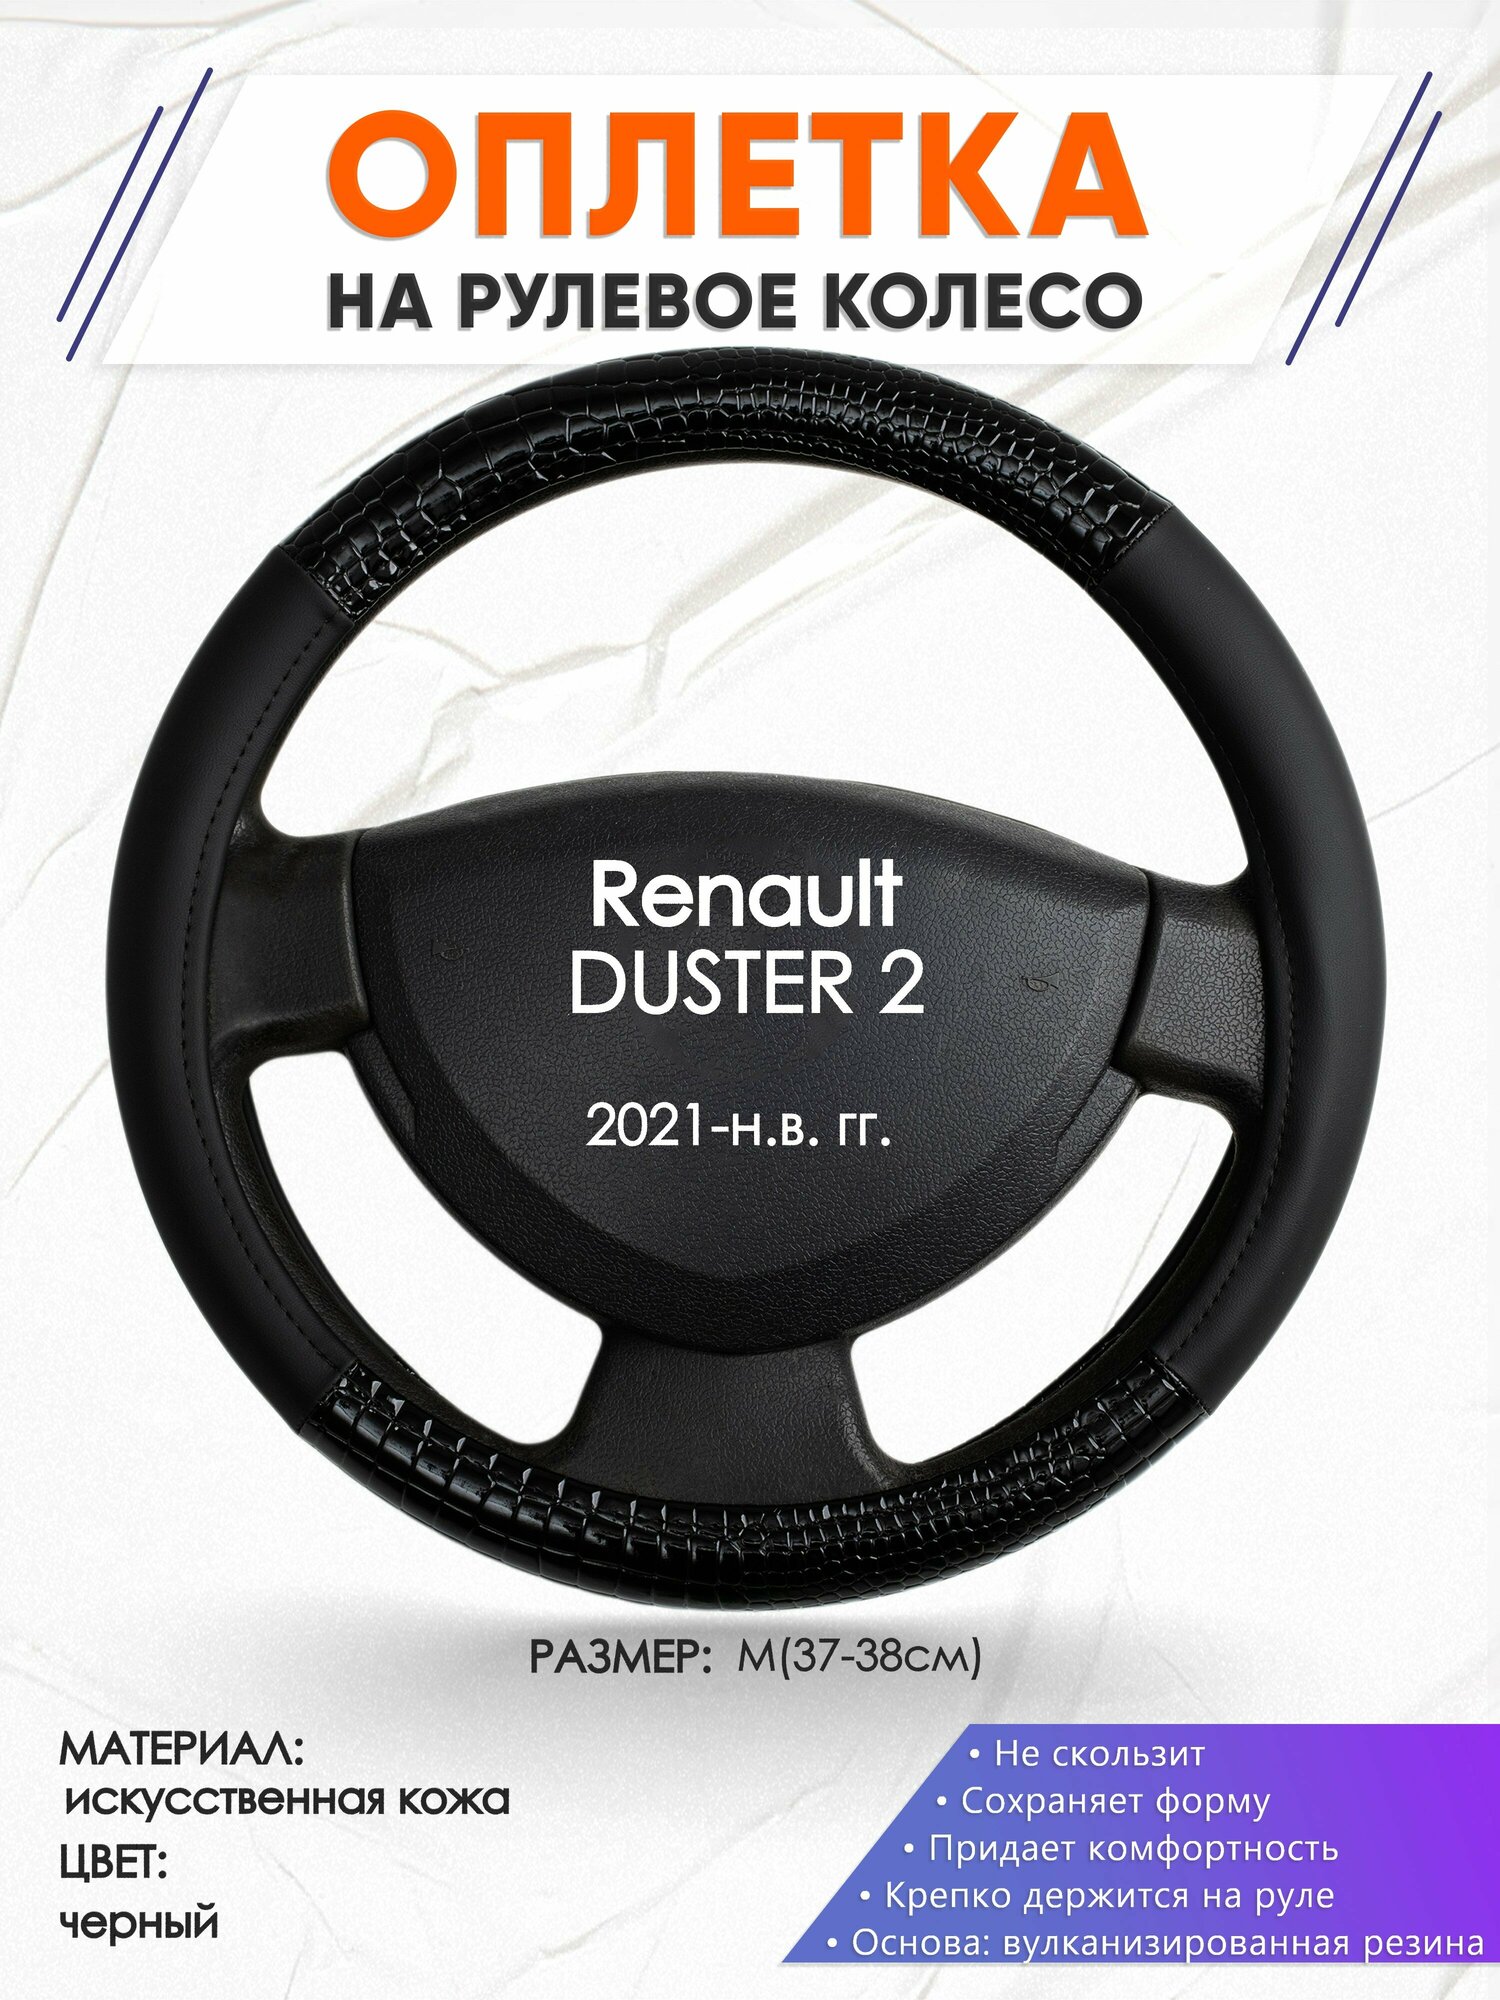 Оплетка наруль для Renault DUSTER 2(Рено Дастер 2) 2021-н. в. годов выпуска размер M(37-38см) Искусственная кожа 76